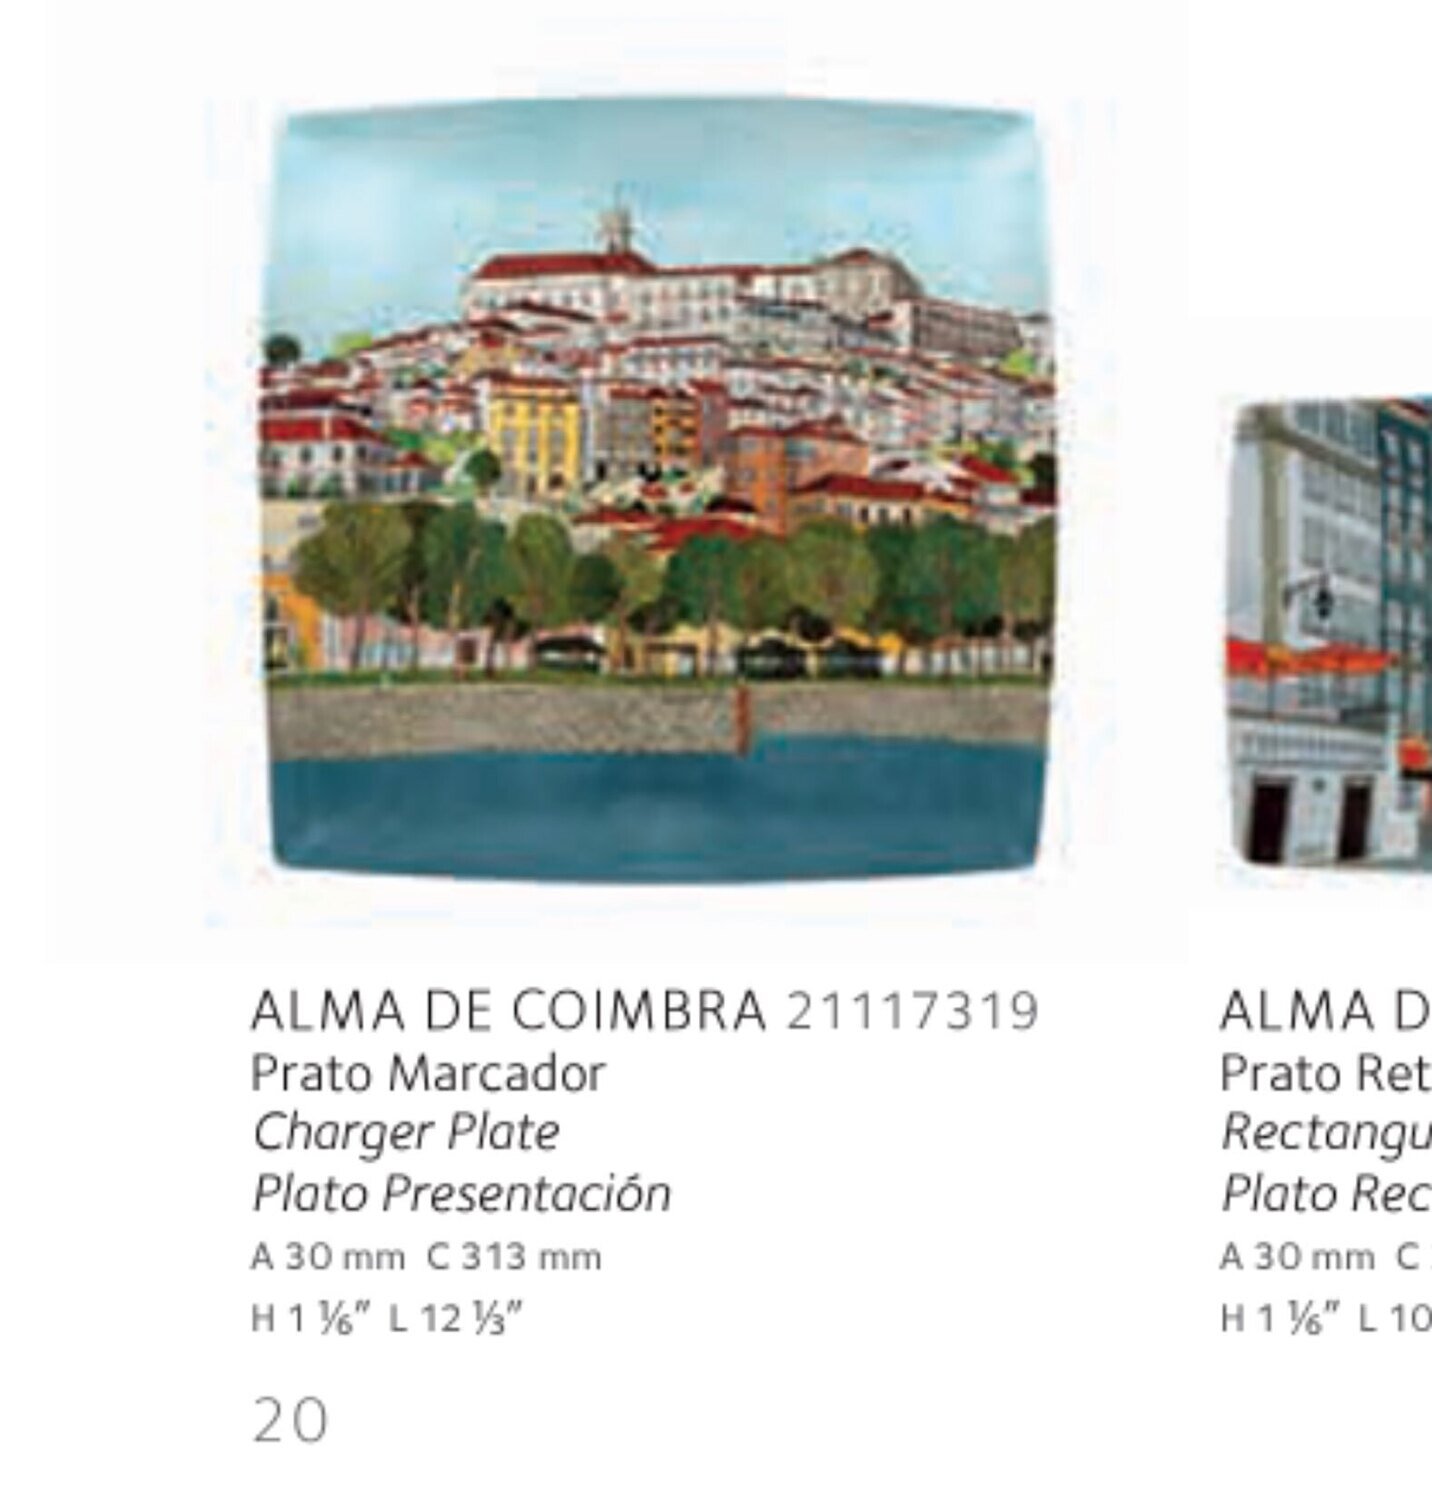 Vista Alegre Alma Coimbra Charger Plate 21117319